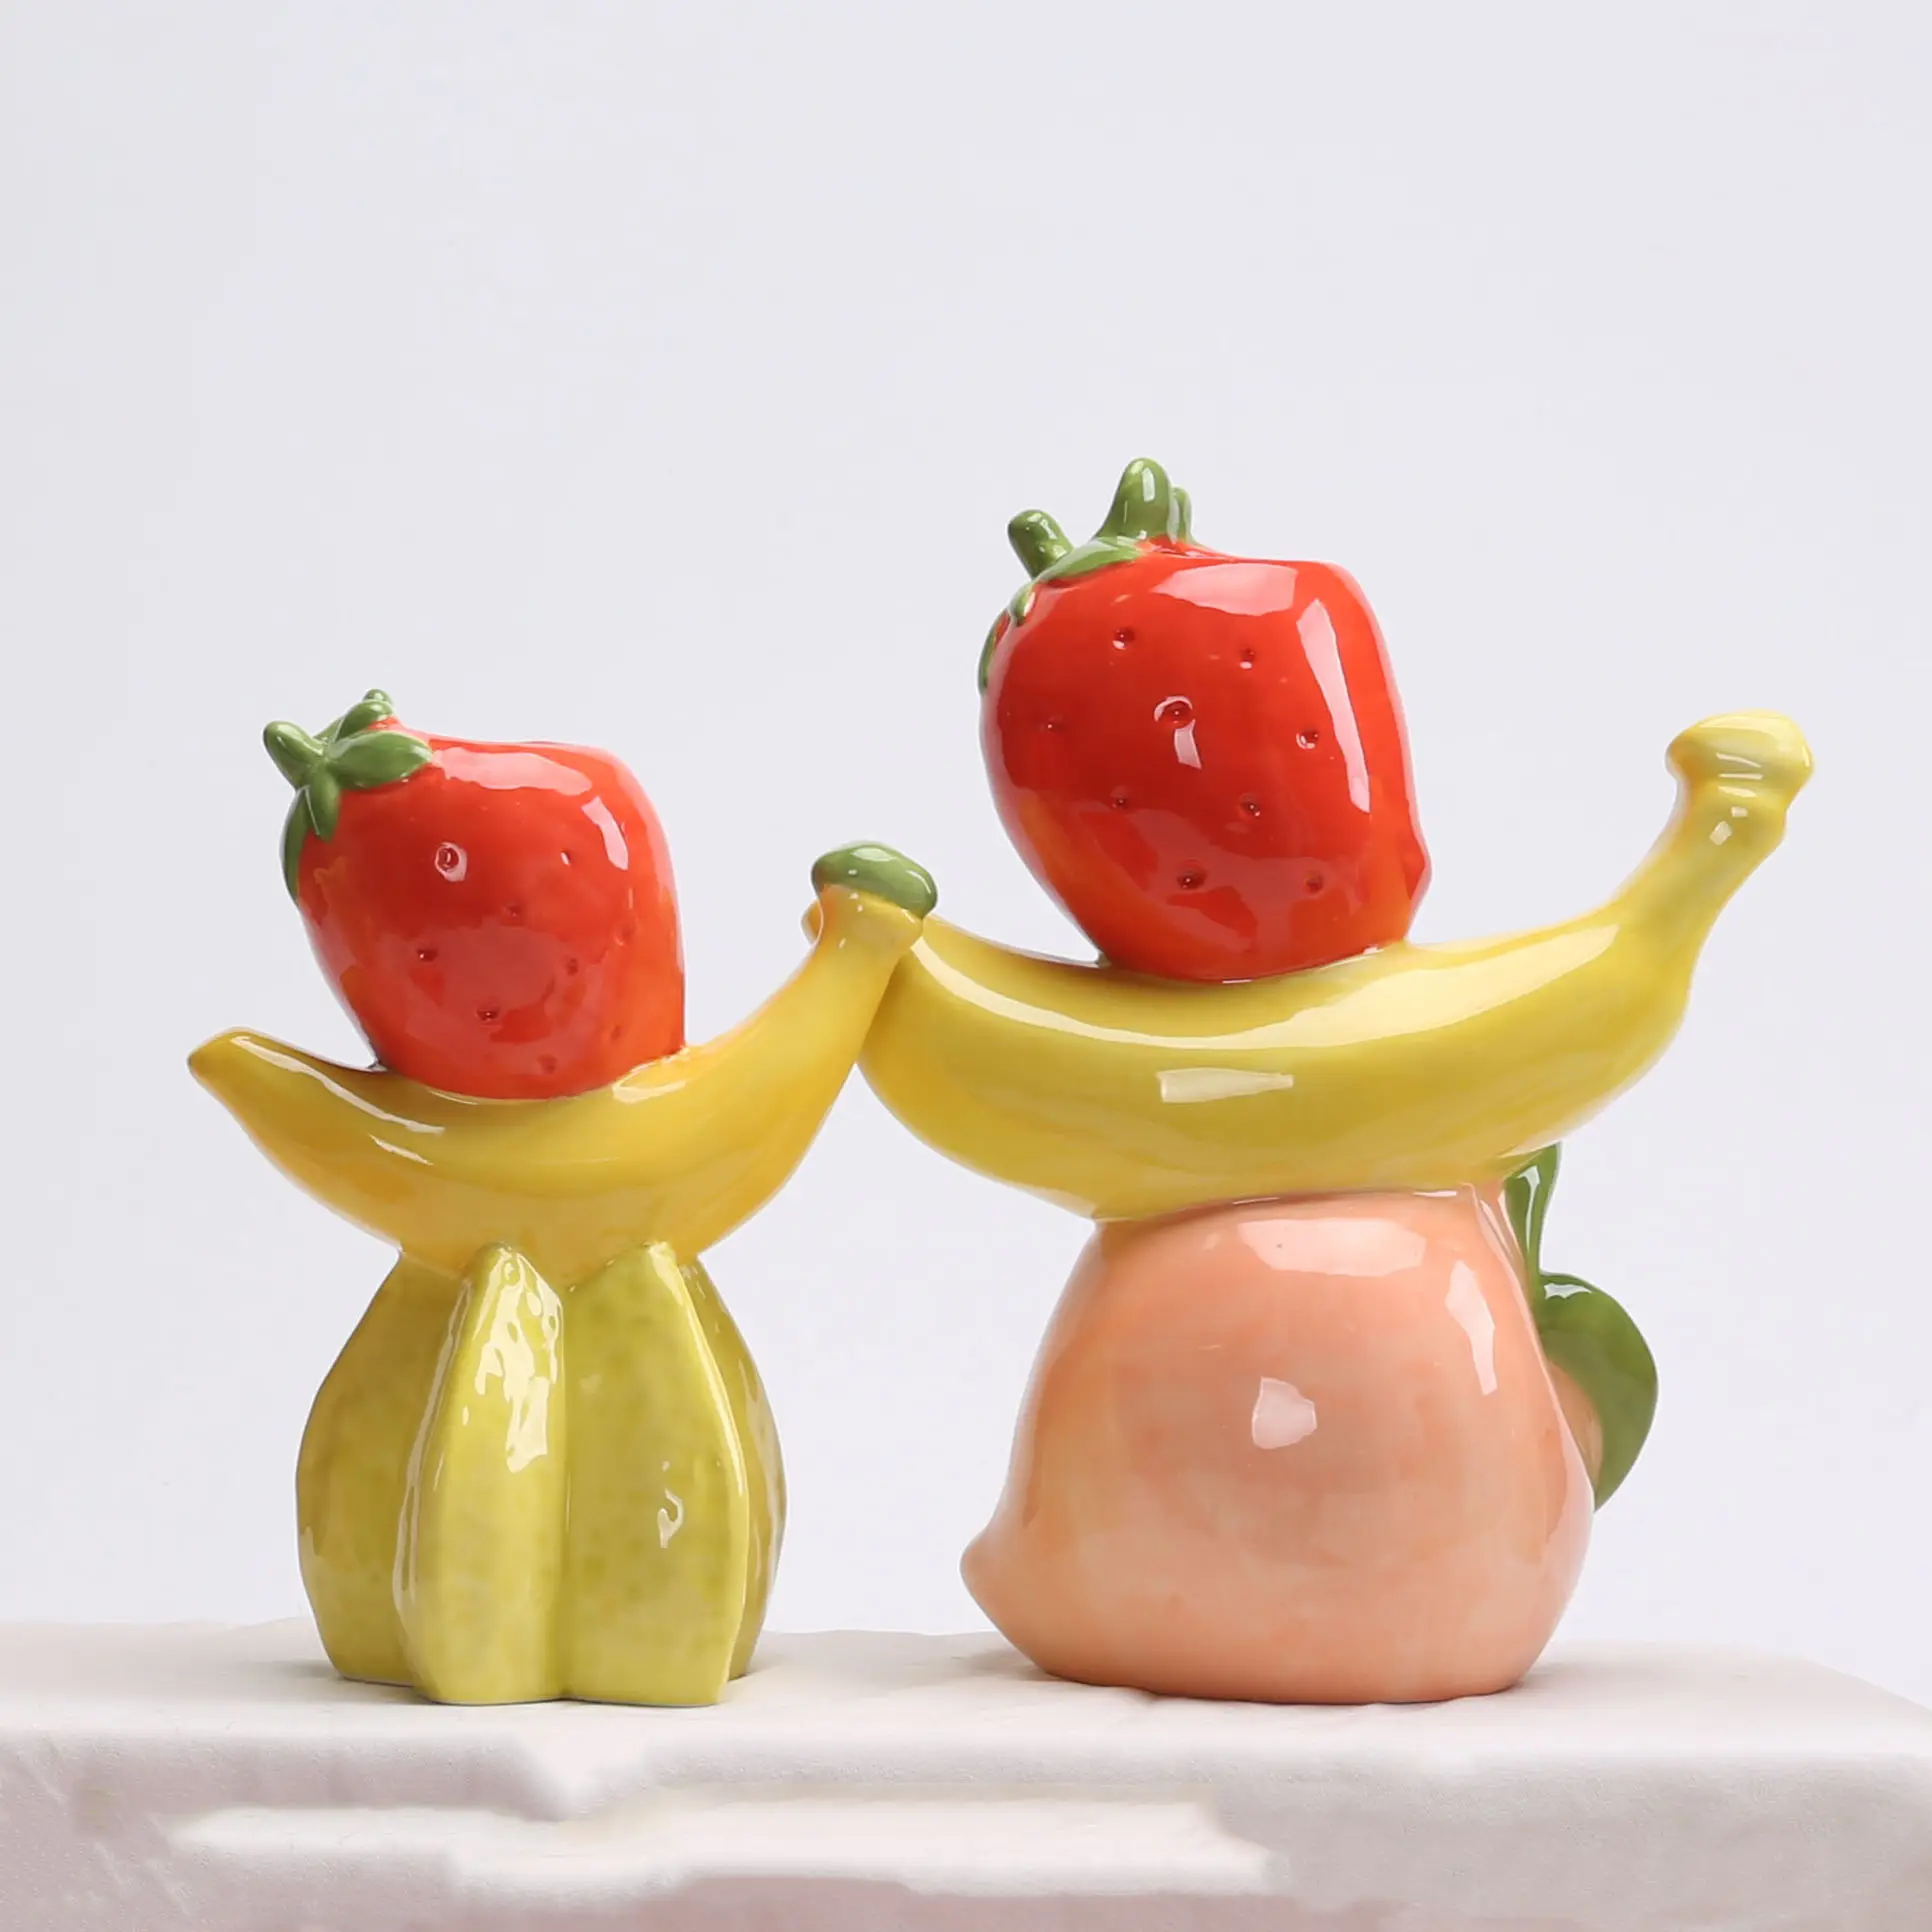 Оптовая продажа керамическая фигурка яблока фарфоровая фруктовая статуя красочная лимонная скульптура уникальный банановый Декор подарок для детей